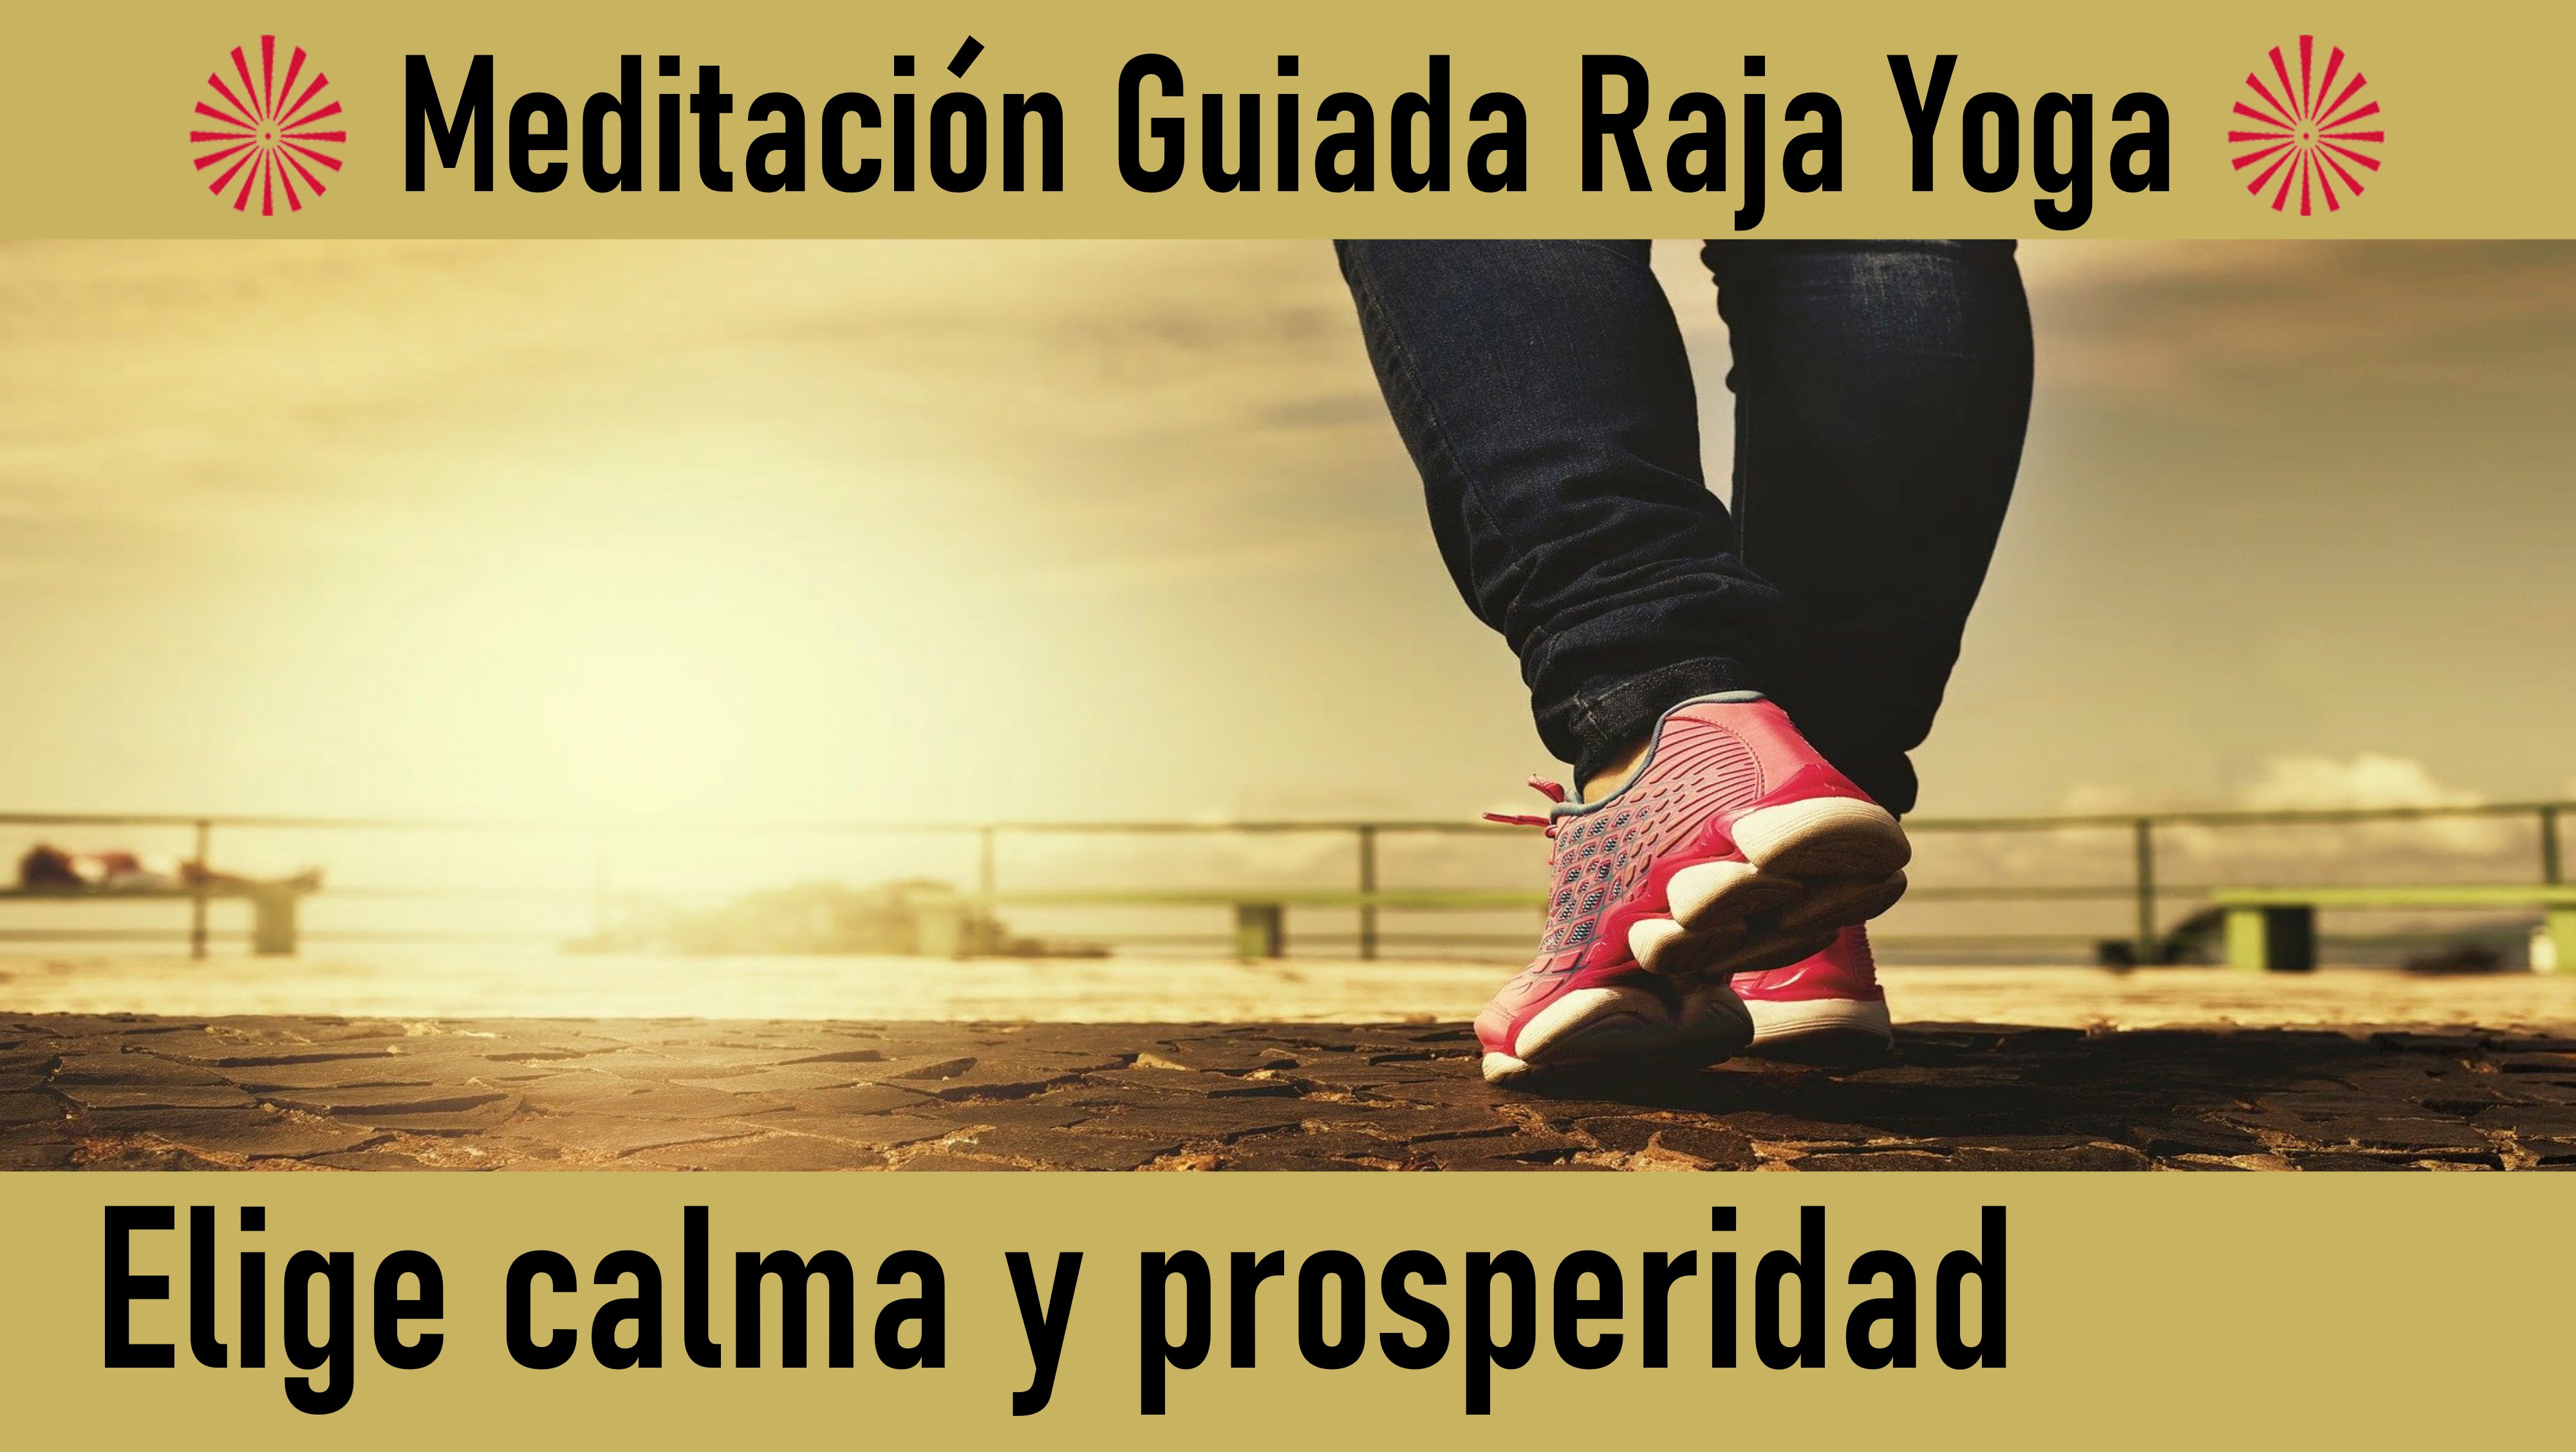 Meditación Raja Yoga:  Elige calma y prosperidad (5 Junio 2020) On-line desde Barcelona